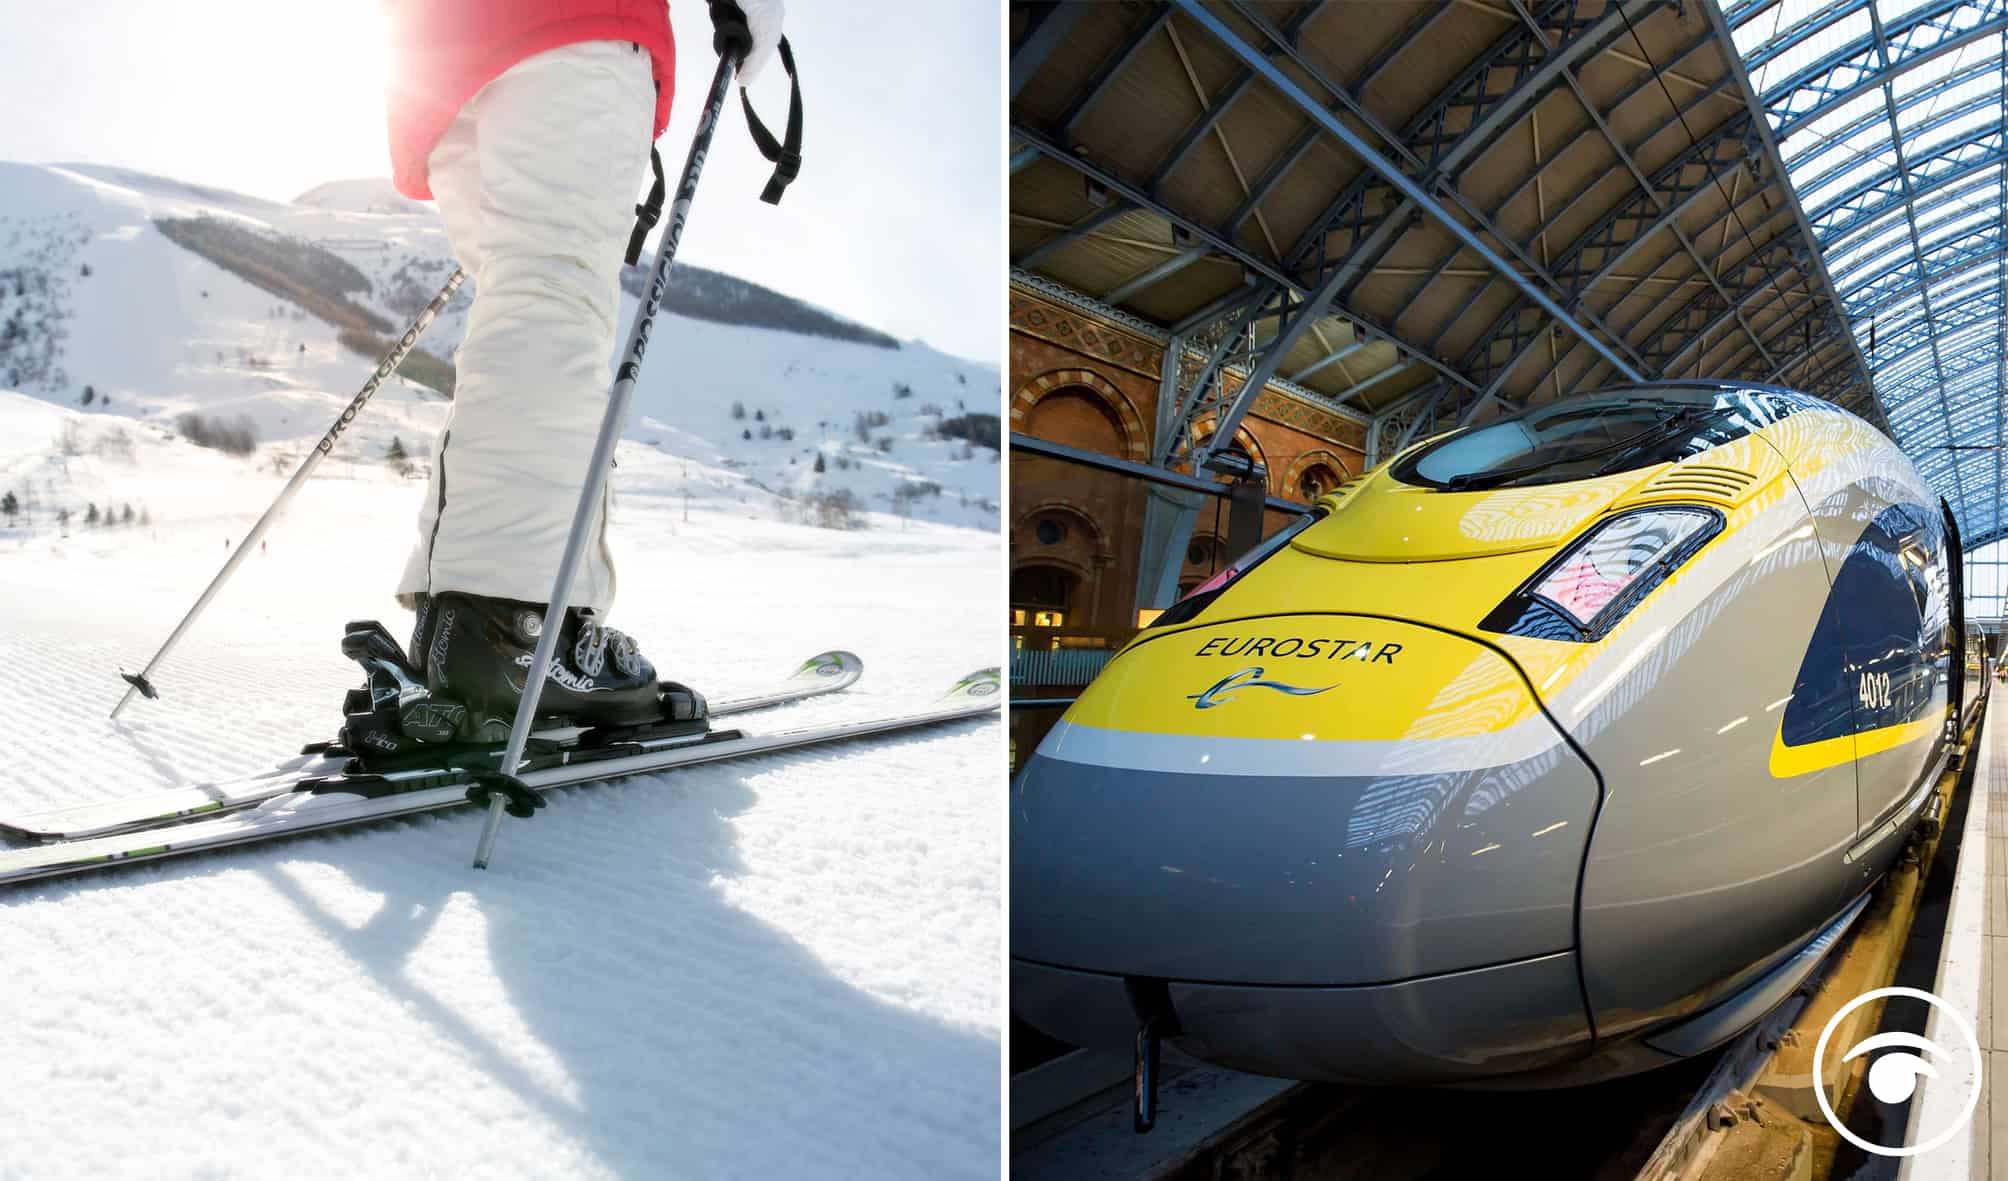 Lockdown: French police stop ski trip group from boarding Eurostar in London